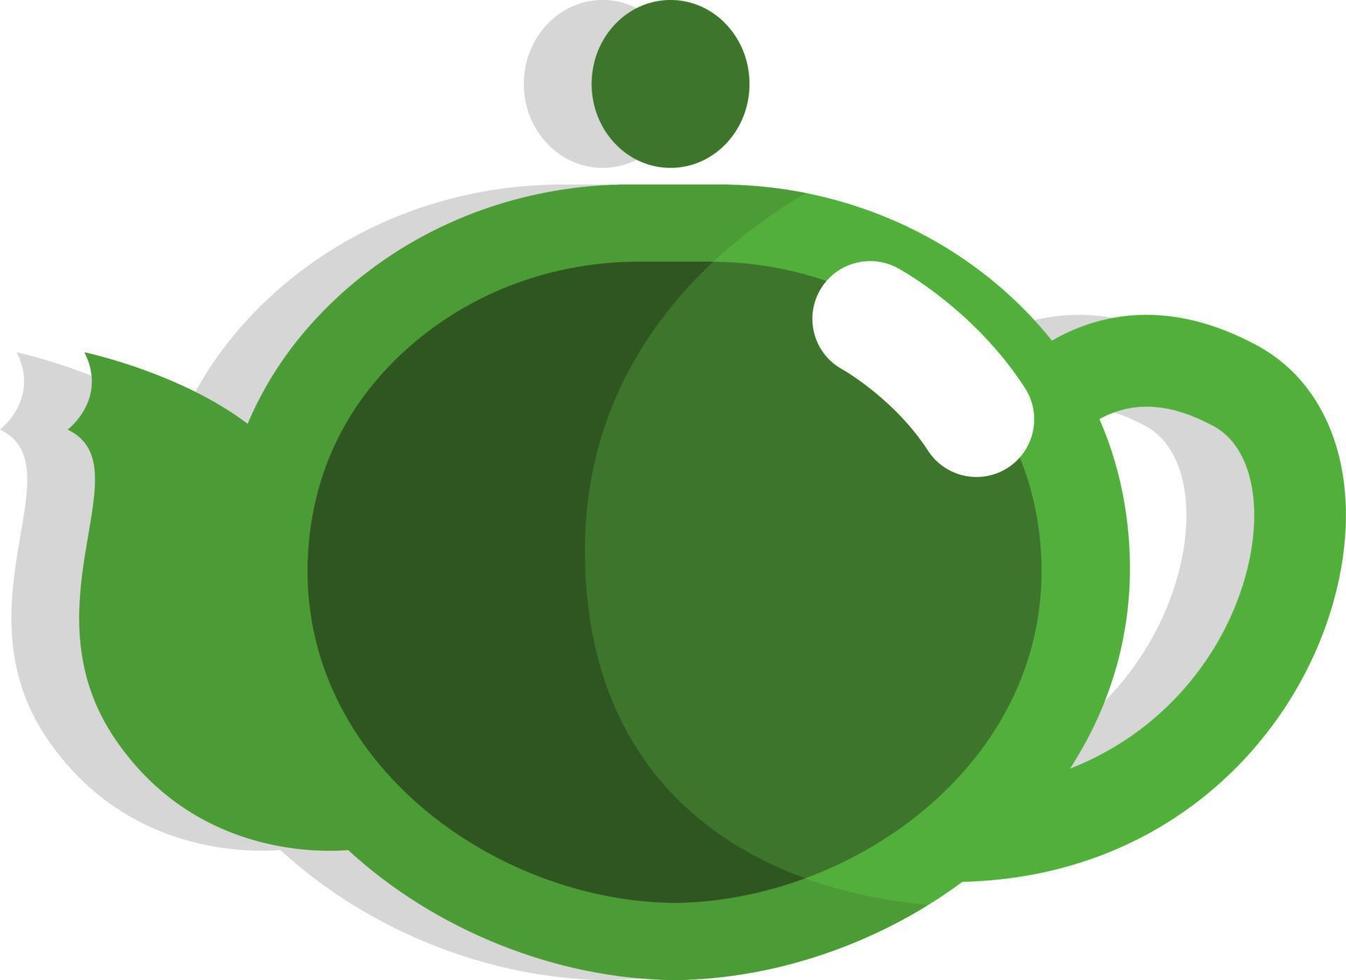 Green tea teapot, icon, vector on white background.